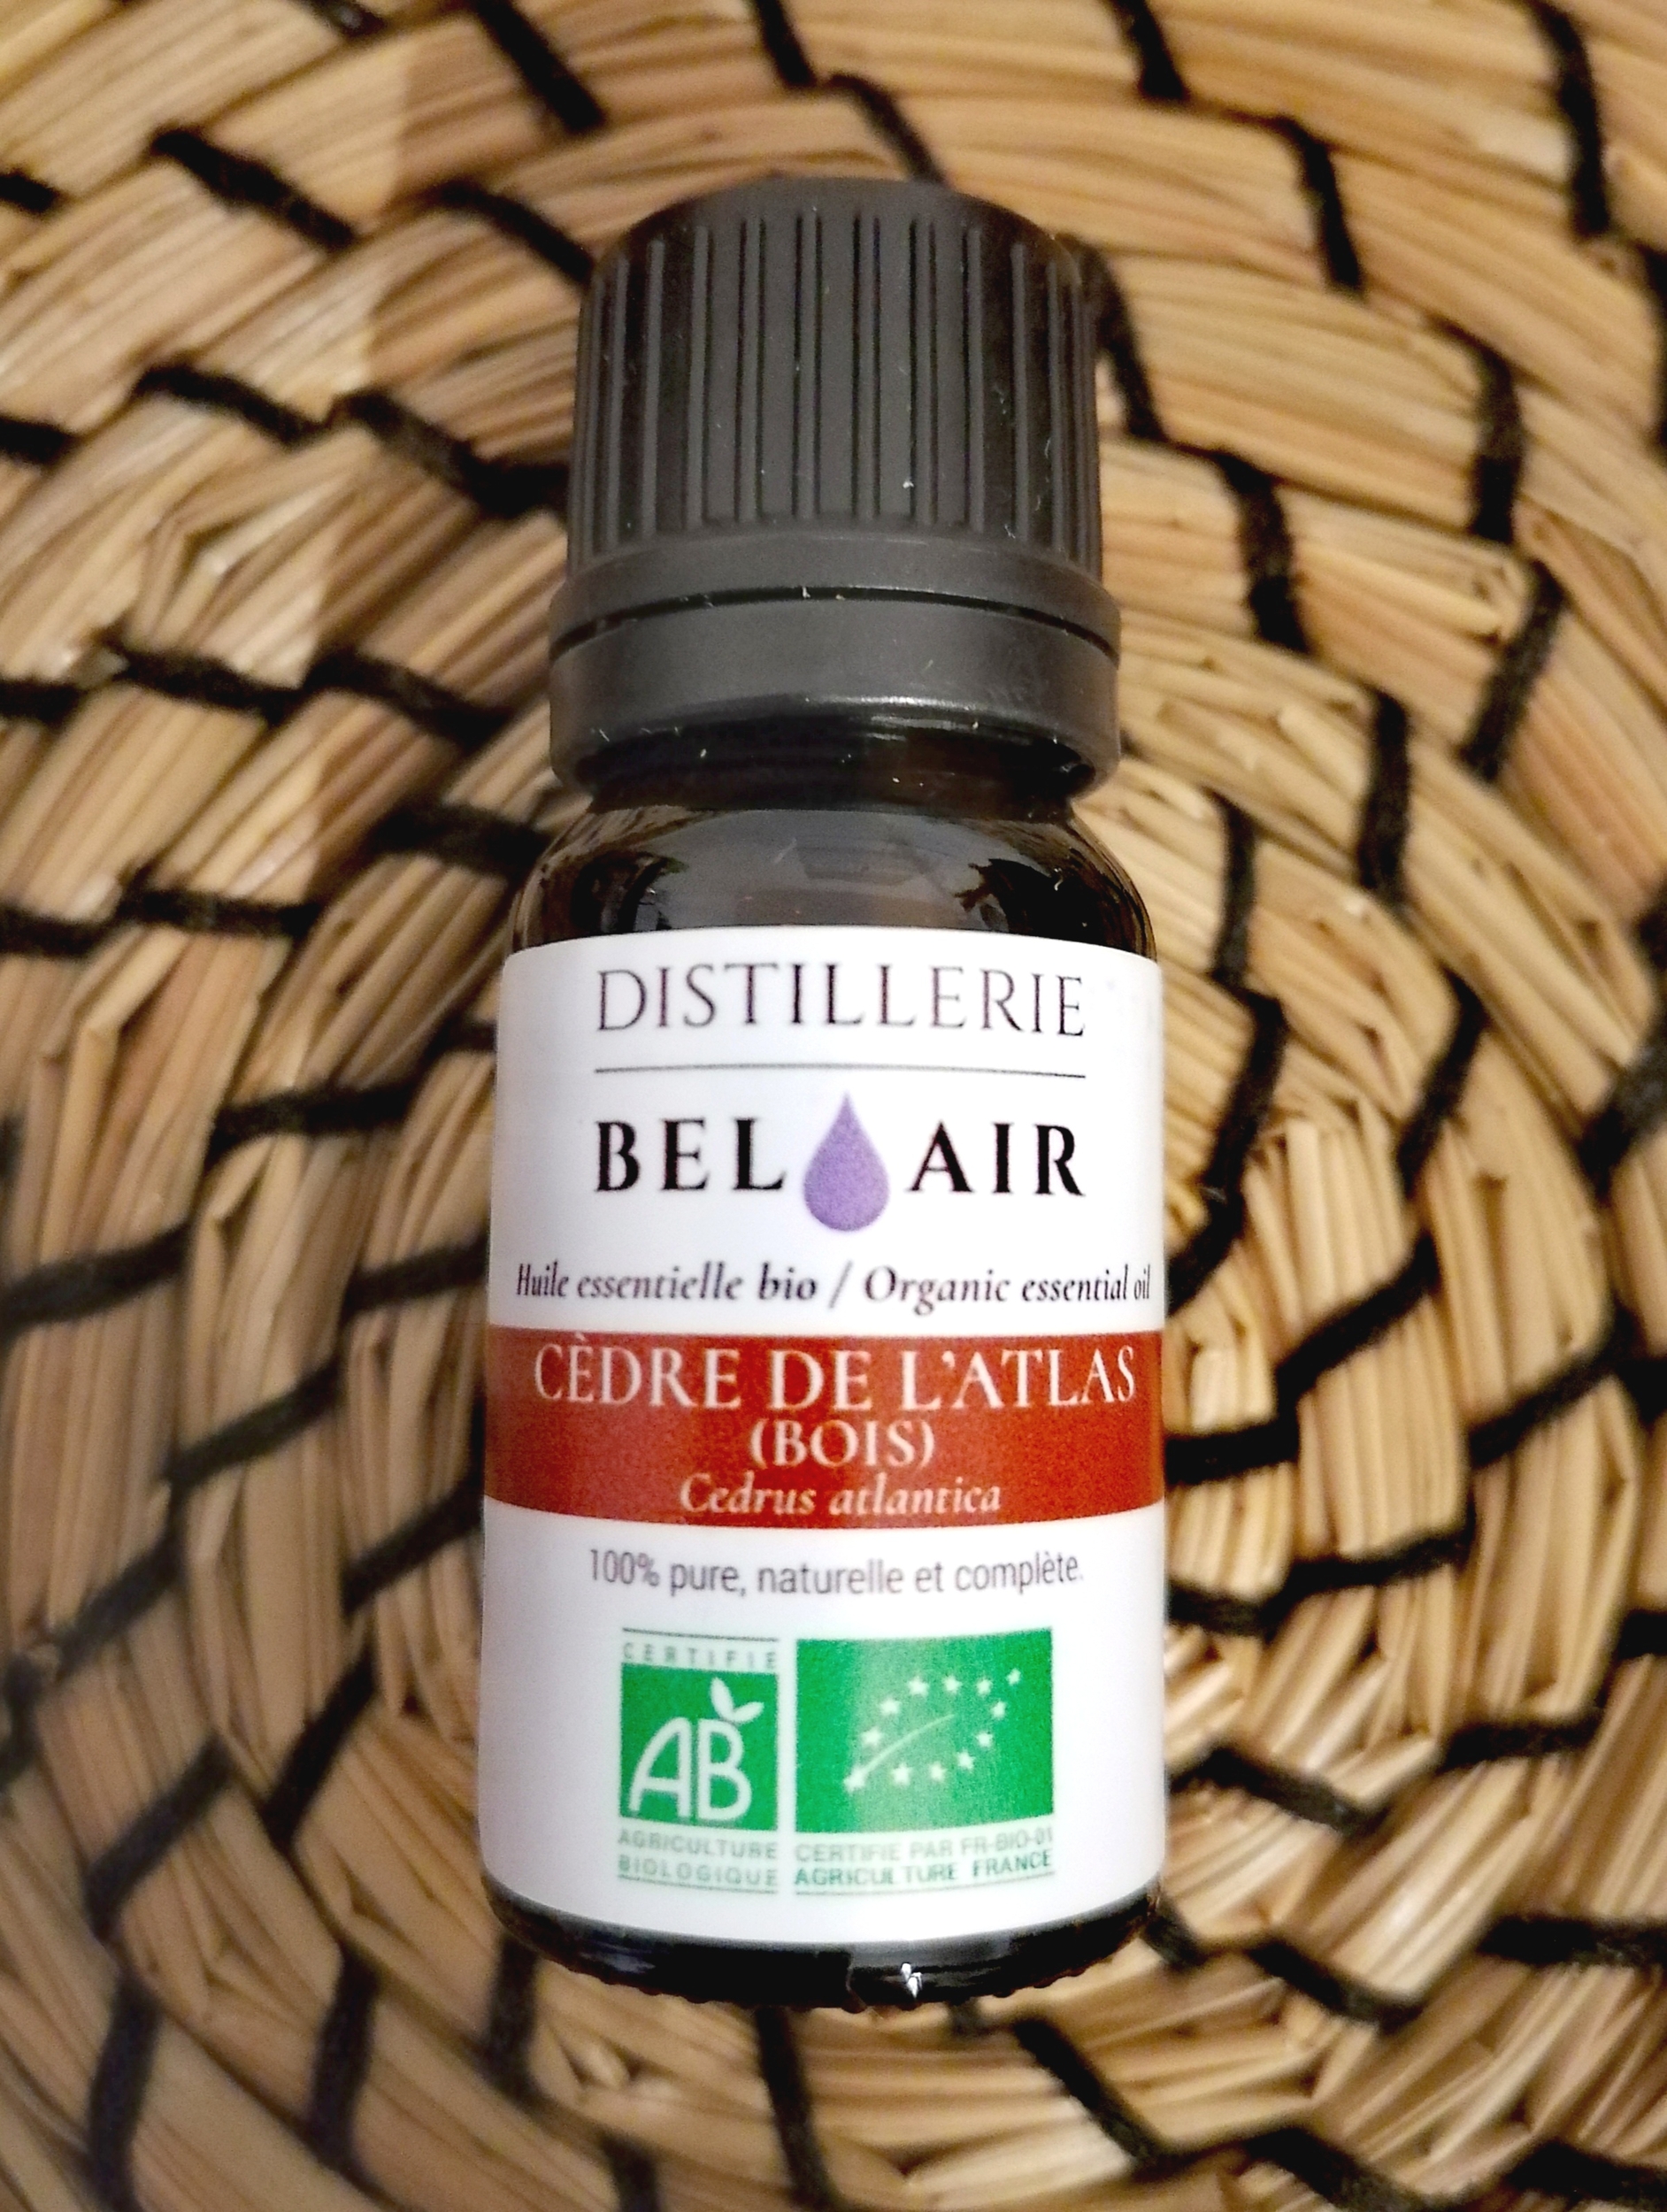 he-Cedre-de-l-atlas-huile-essentielle-bel-air-bio-herboristerie